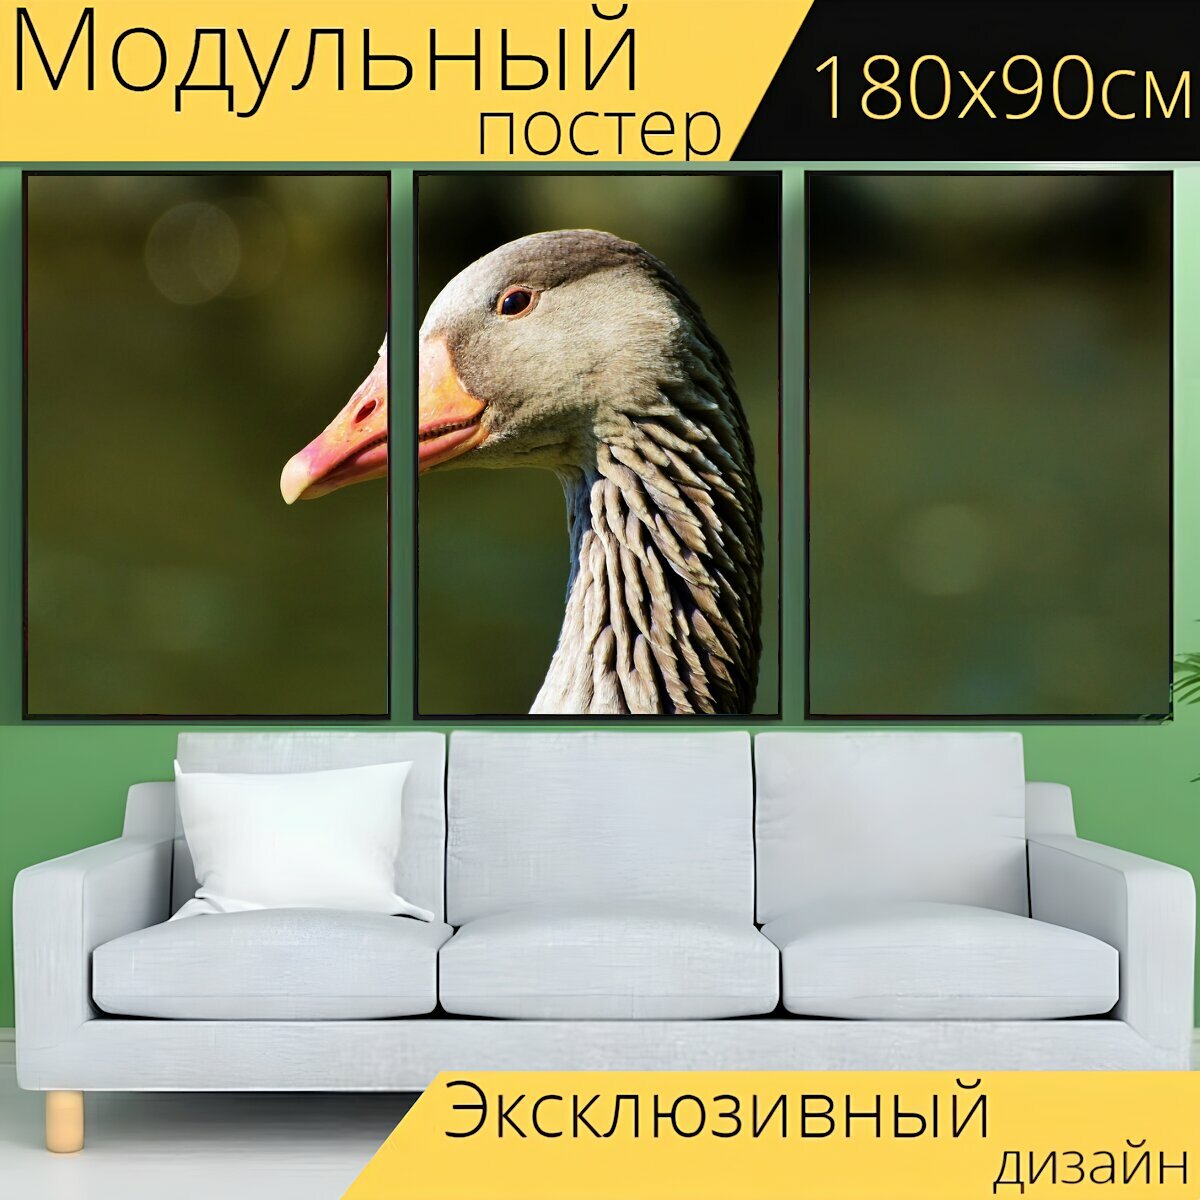 Модульный постер "Дикий гусь, серый гусь, водоплавающая птица" 180 x 90 см. для интерьера